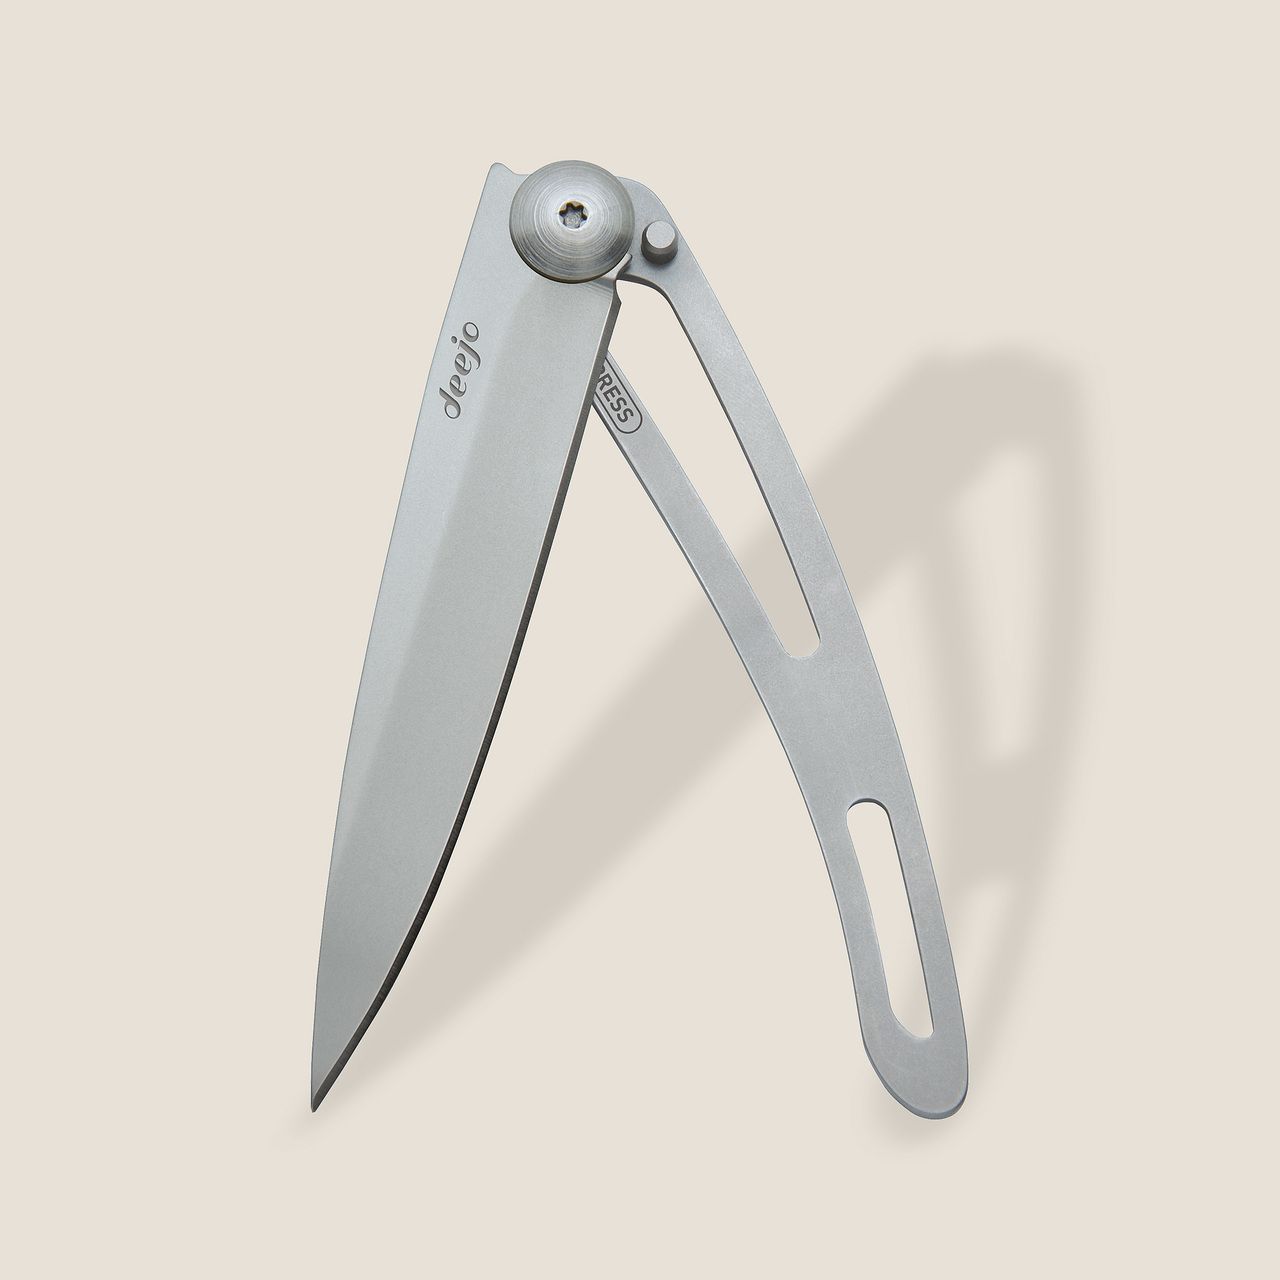 Deejo 37g, Olive wood / Van Life - 37 GR (Standard) - POCKET KNIVES